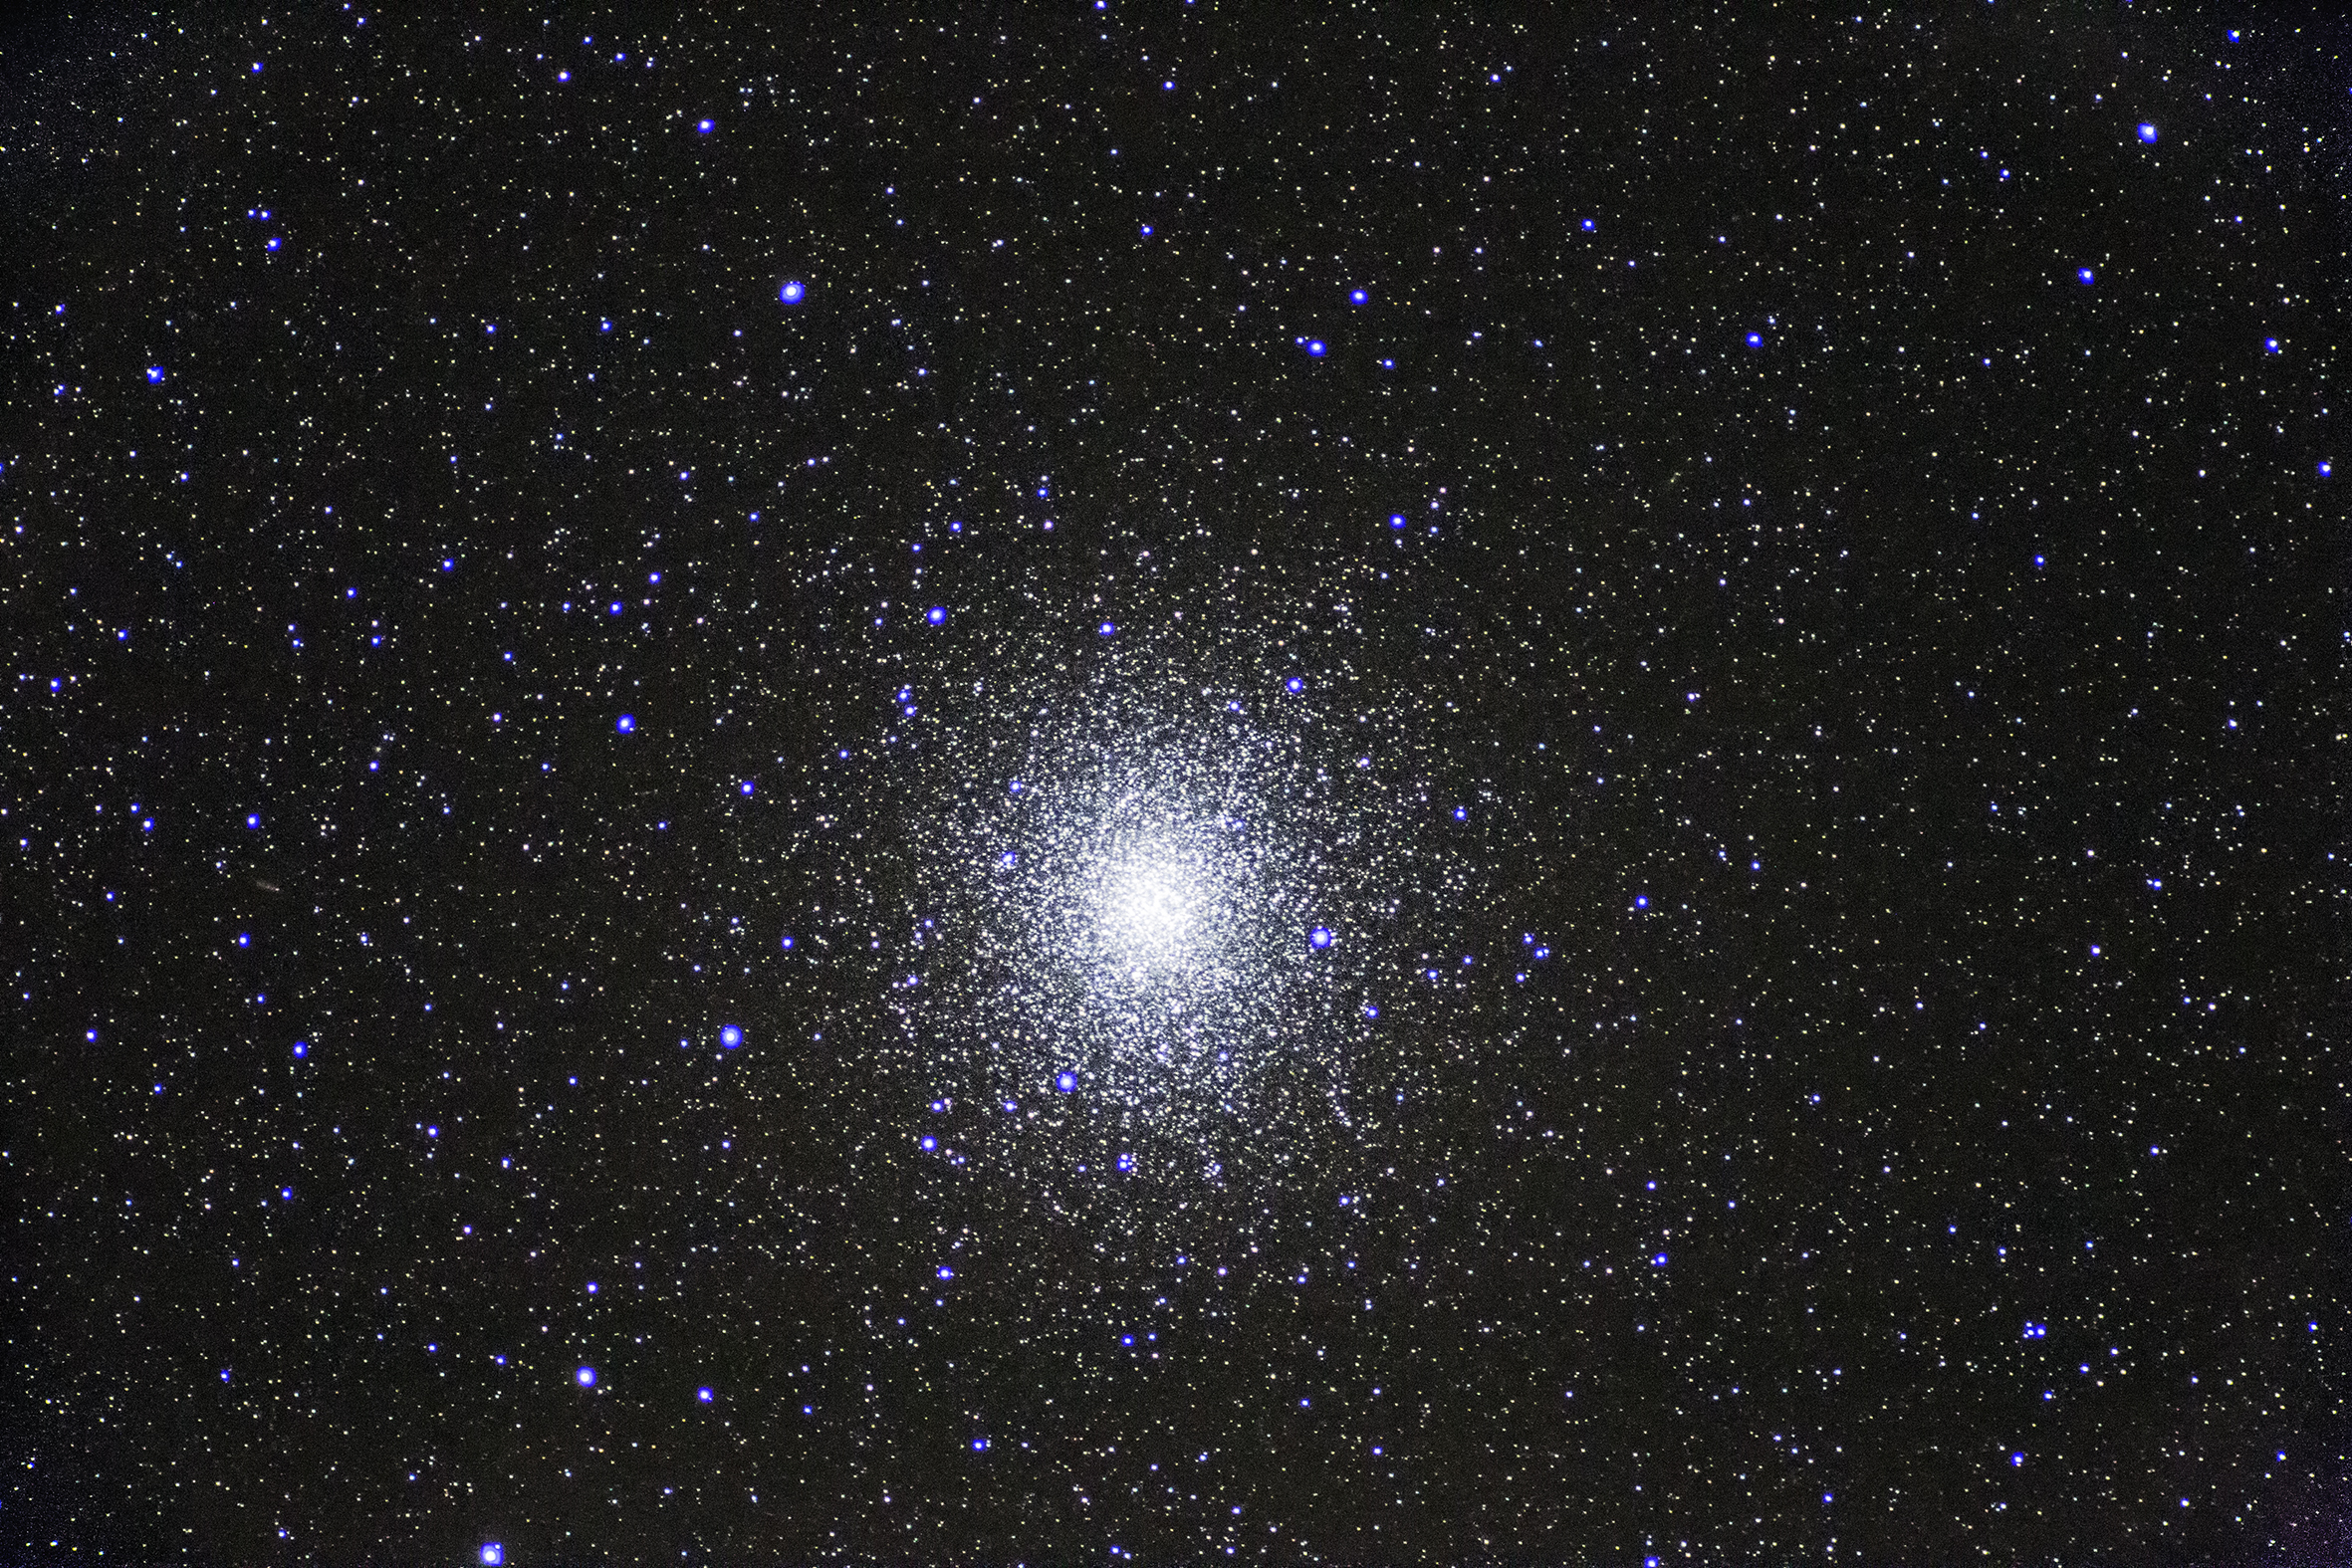 20180806_NGC5139_Omega Centauri_IMG_7639_resized.jpg